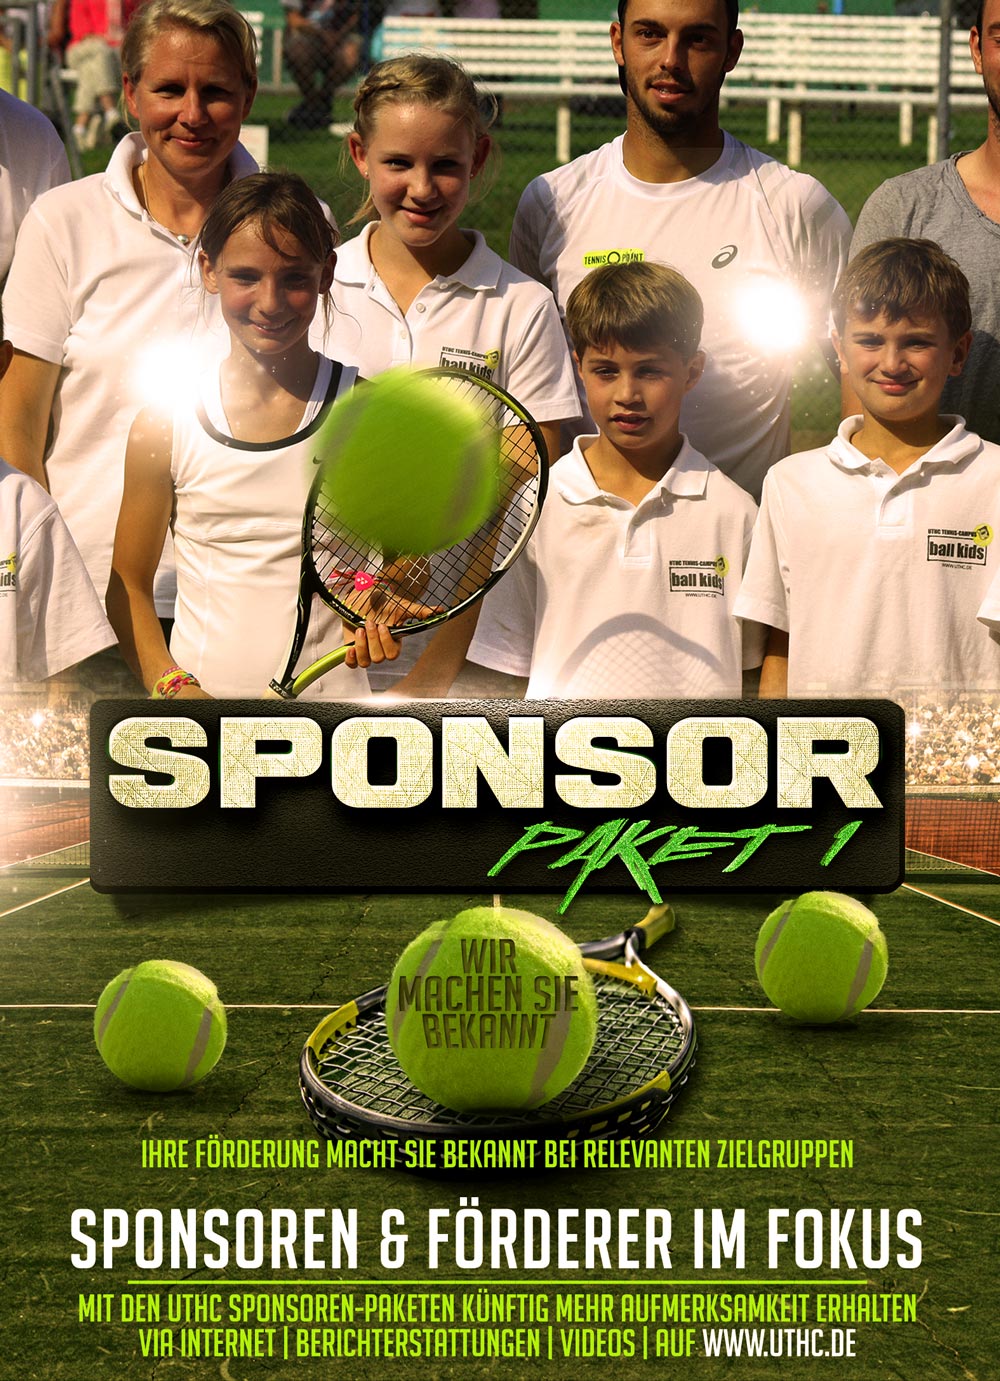 Tennis Sponsoren Paket 1